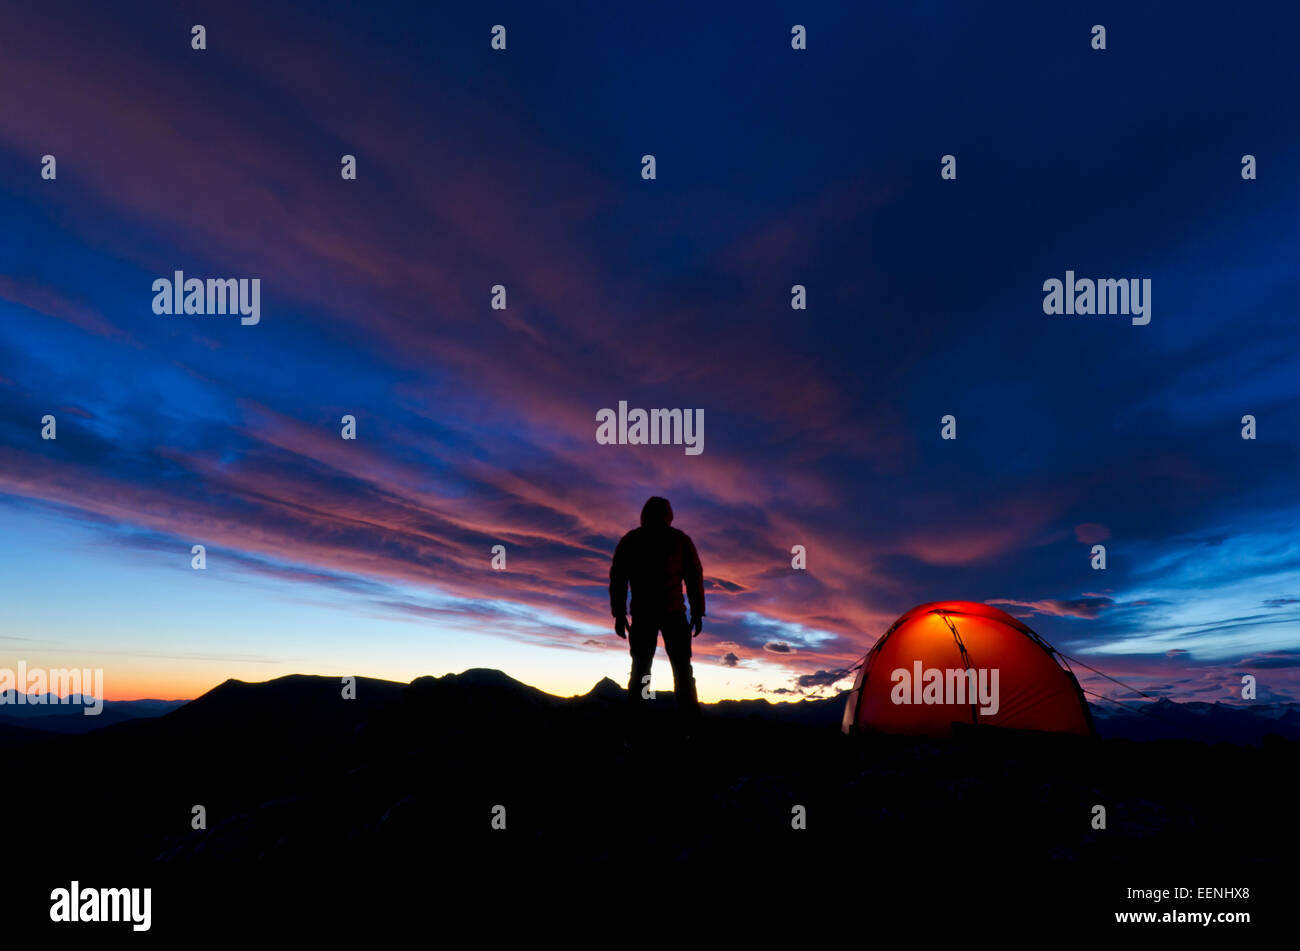 L uomo sta nell'ALBA : accesa accanto alla sua tenda, Moere und Romsdal Fylke, Vestland, Norvegia, settembre Foto Stock